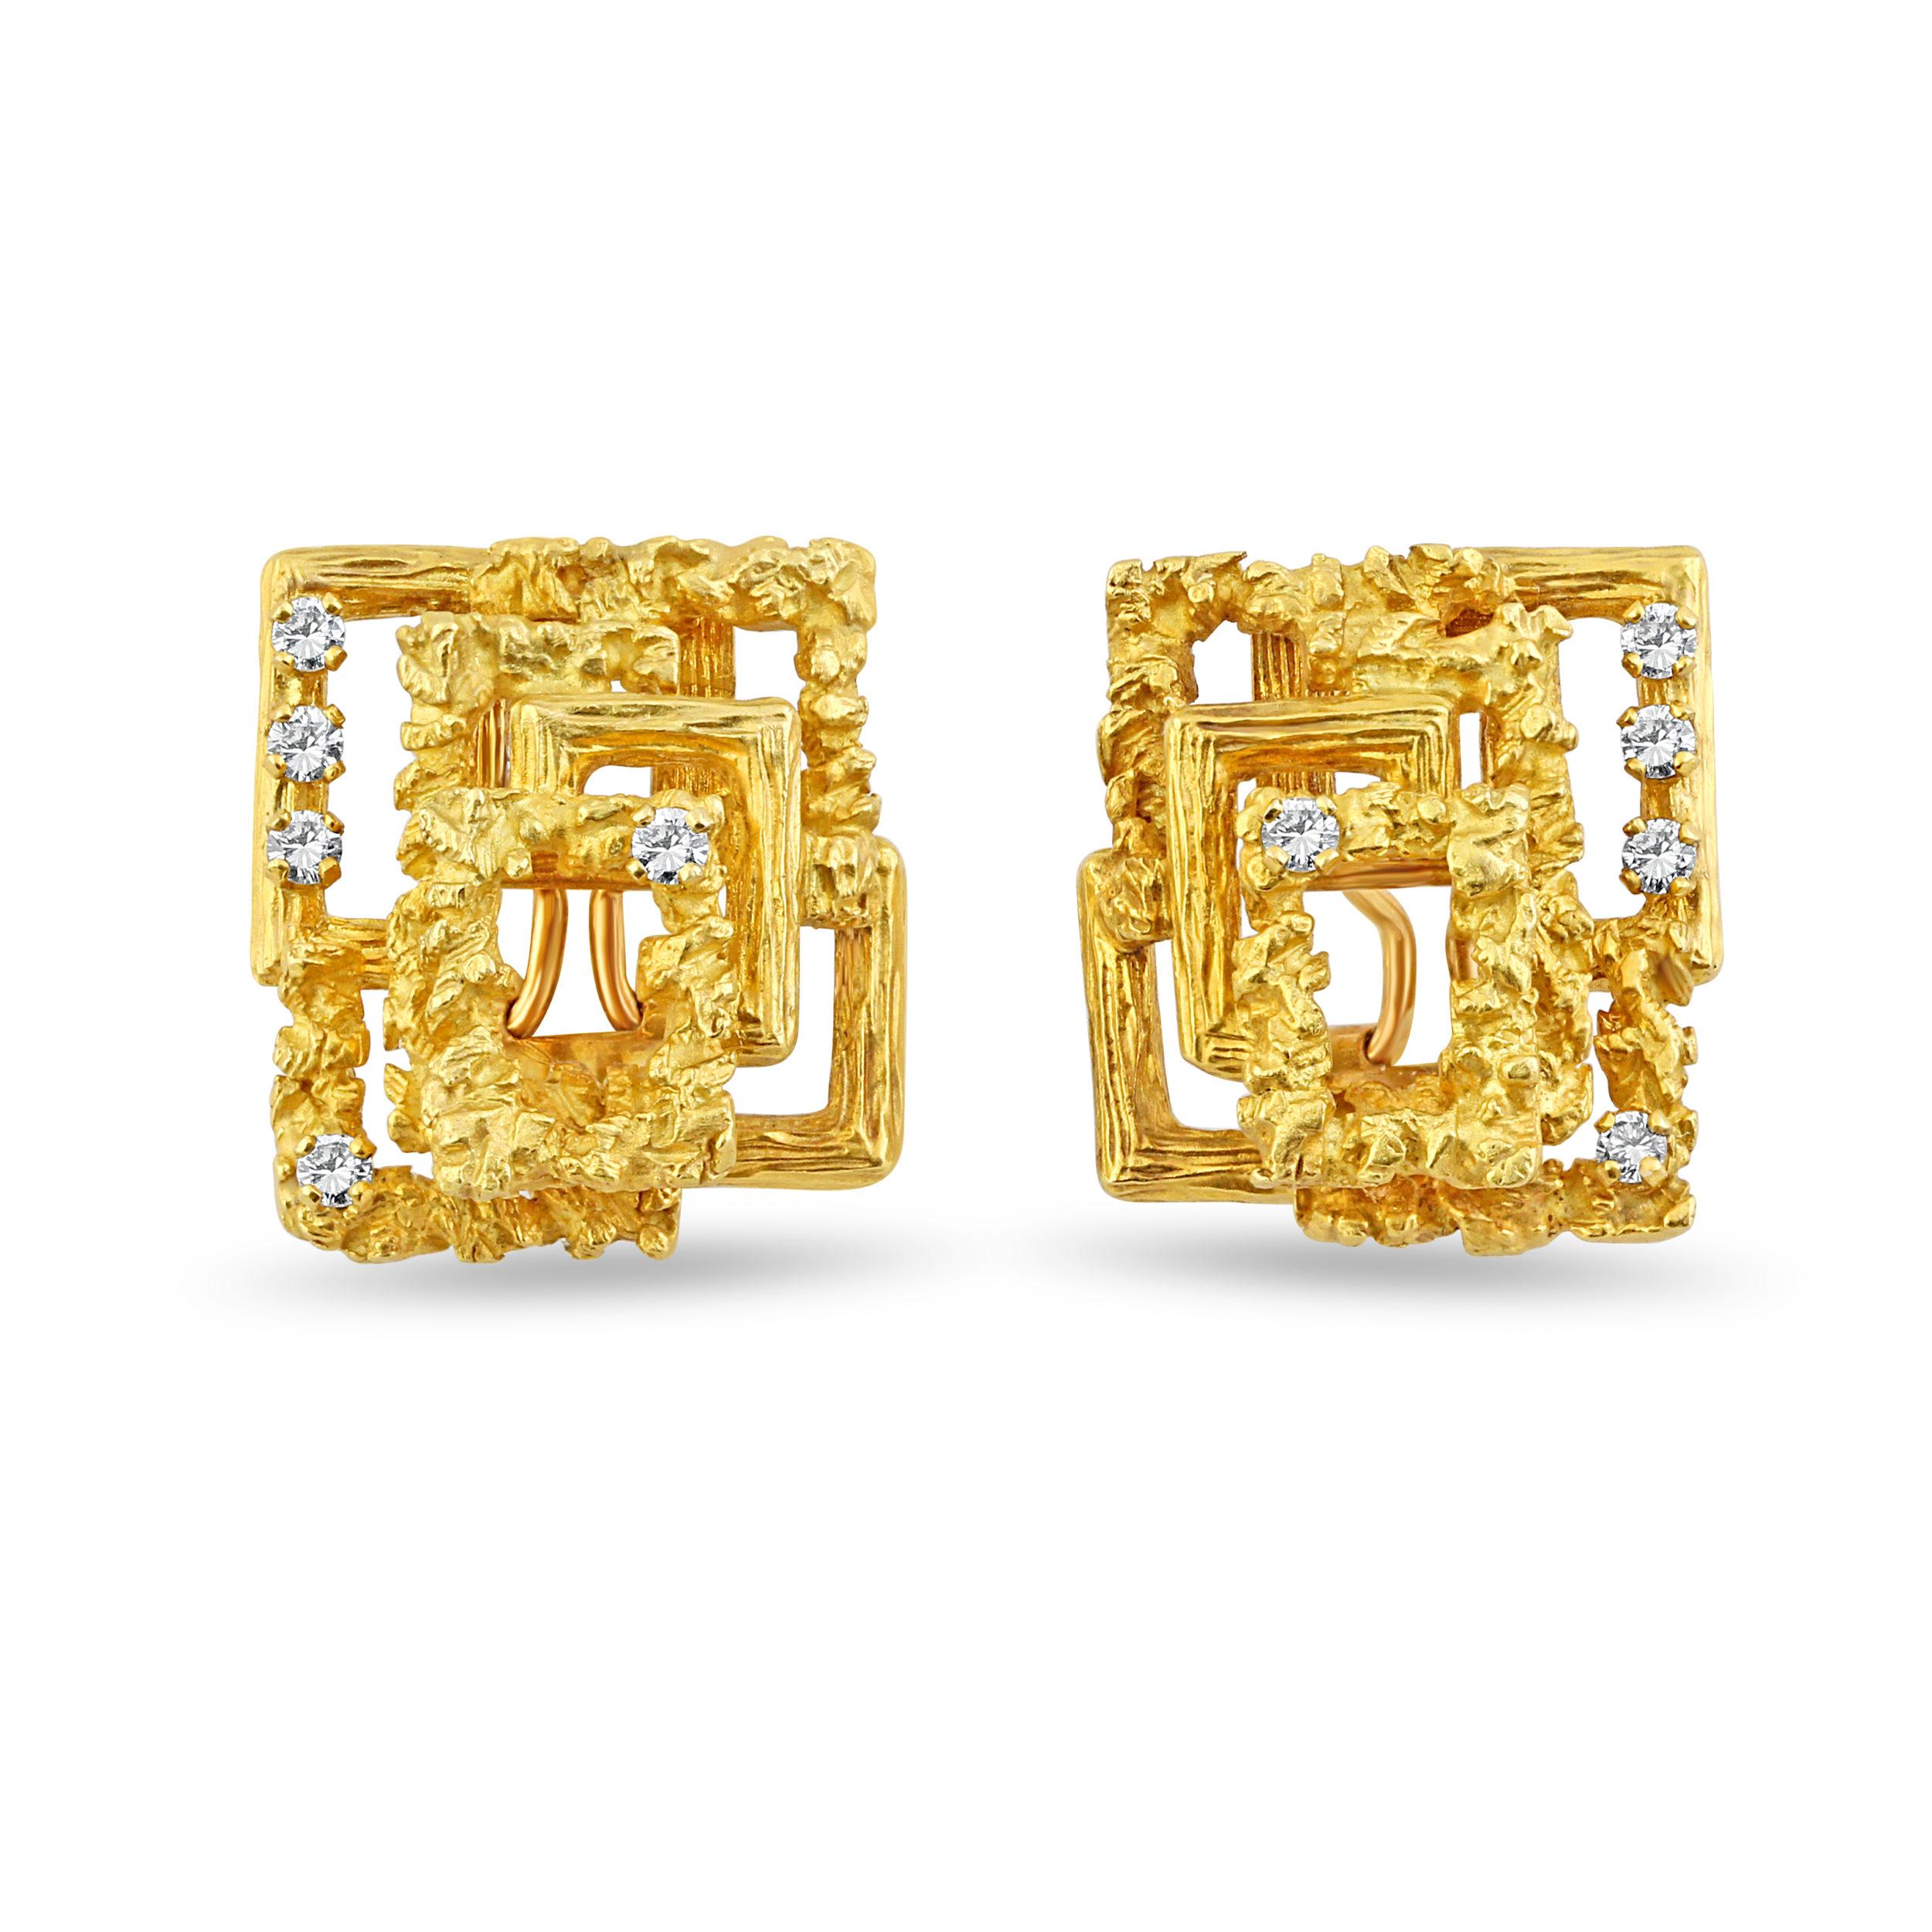 18k Gold & Diamond Bracelet and Earrings For Sale 1